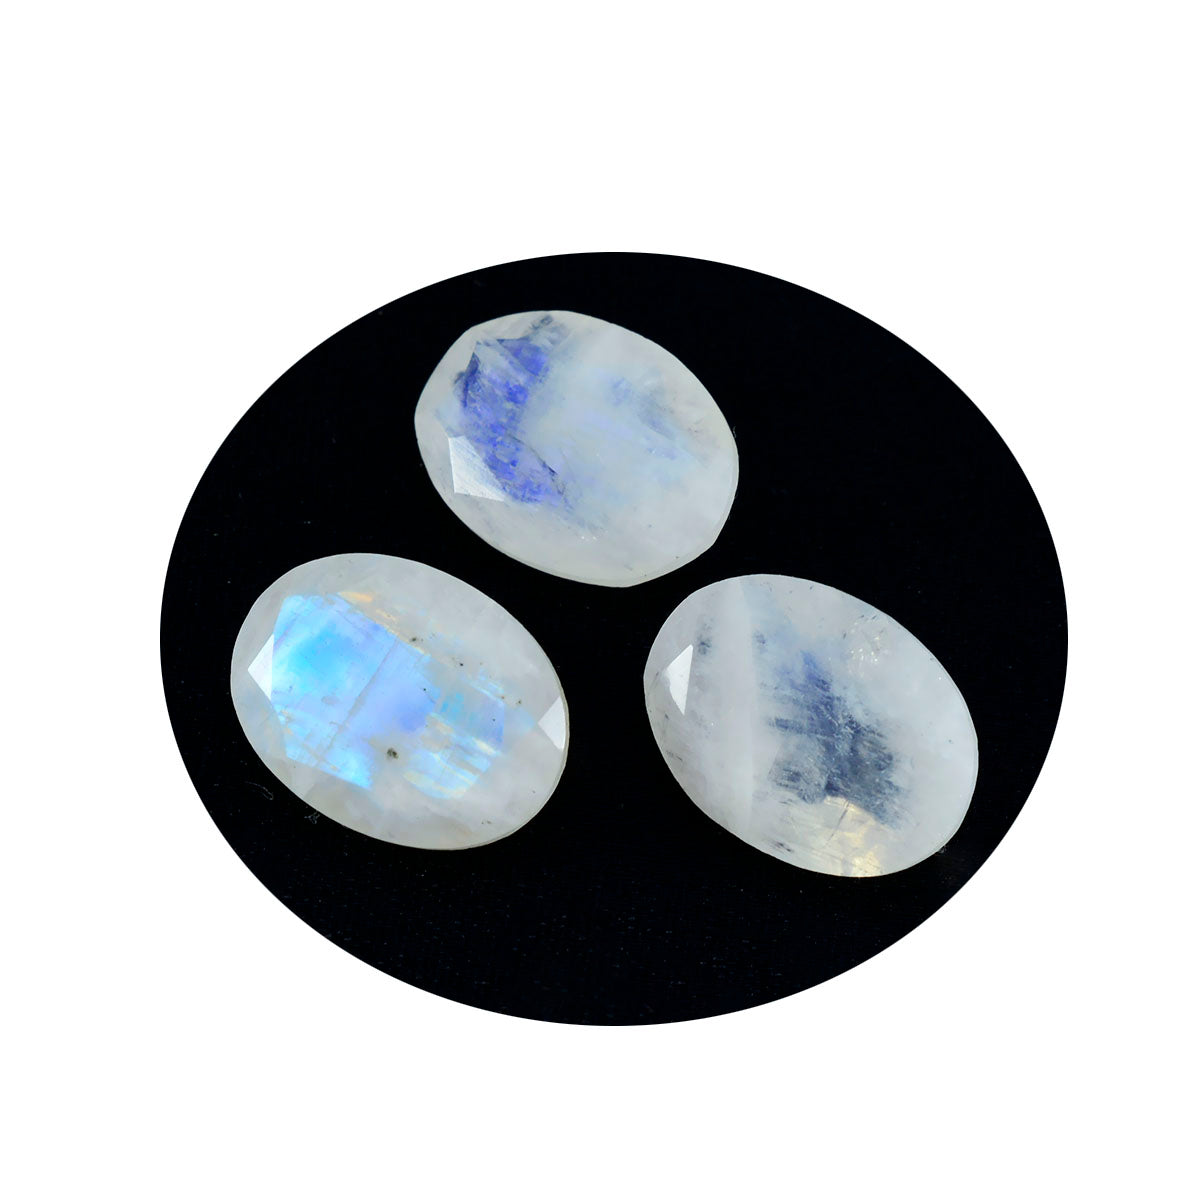 riyogems 1 шт., белый радужный лунный камень, ограненный 9x11 мм, овальной формы, драгоценный камень хорошего качества